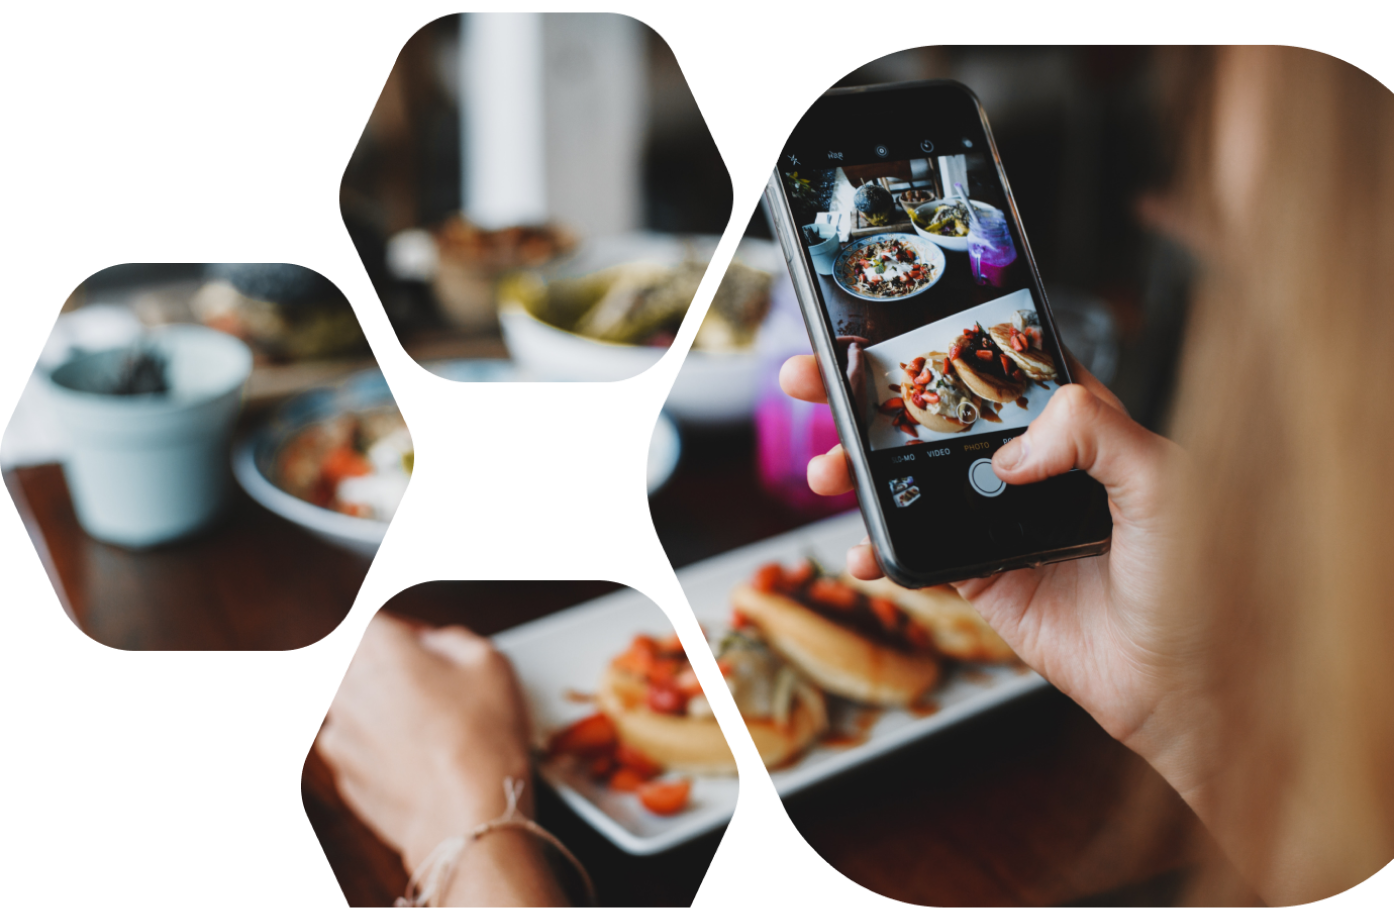 Bild einer Person, die mit ihrem Smartphone ihre Mahlzeit fotografiert